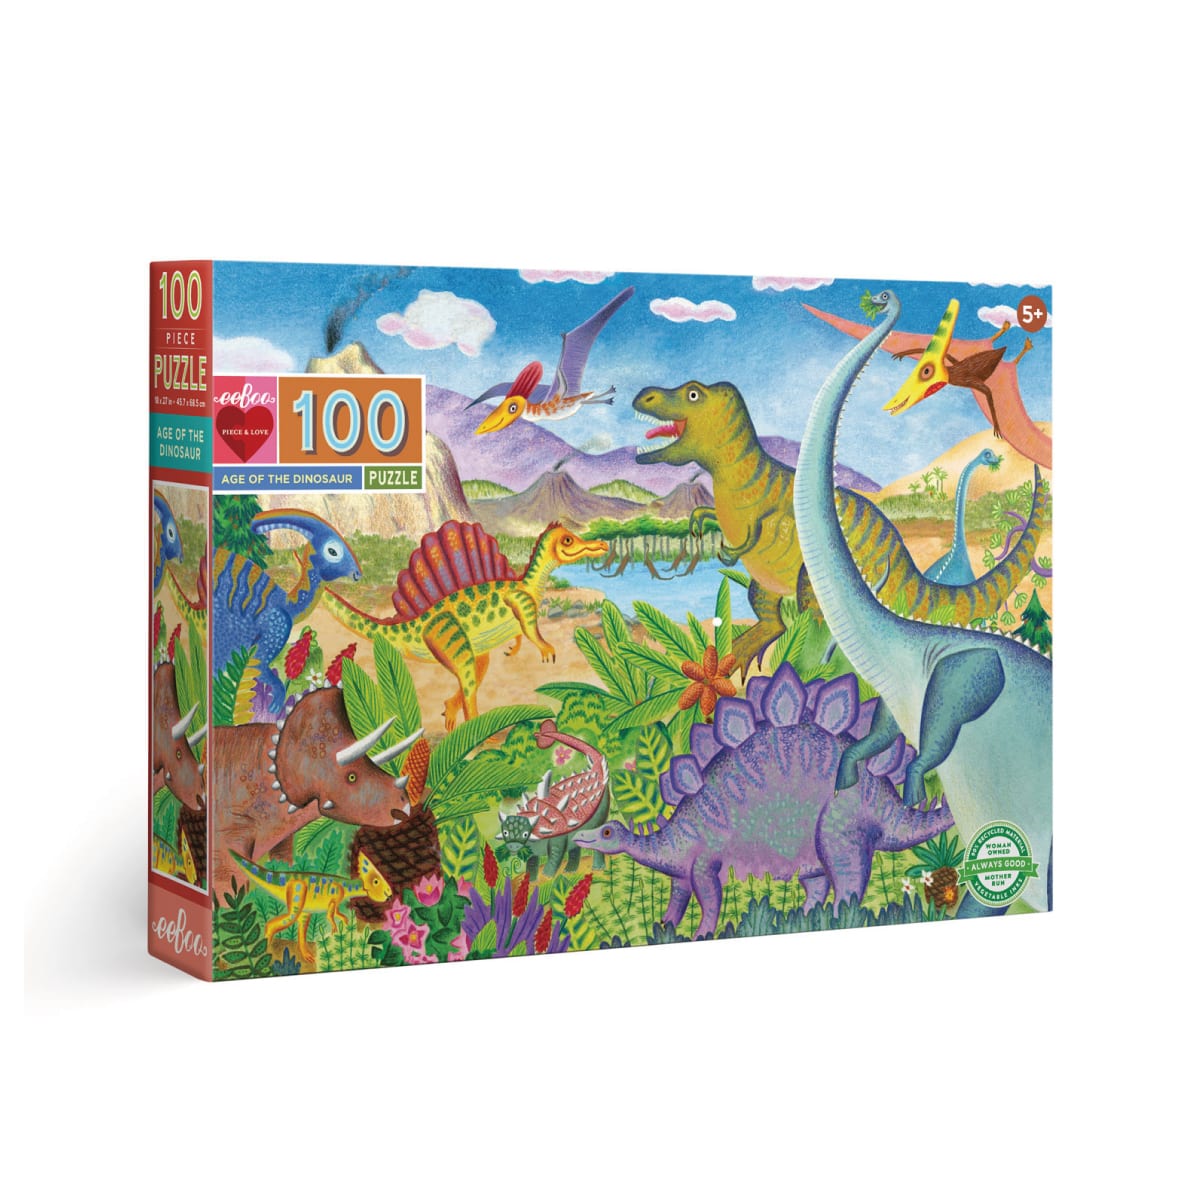 100ピースパズル 恐竜の世界 ボーネルンド オンラインショップ 世界中の知育玩具など あそび道具がたくさん 0歳からのお子様へのプレゼントにも